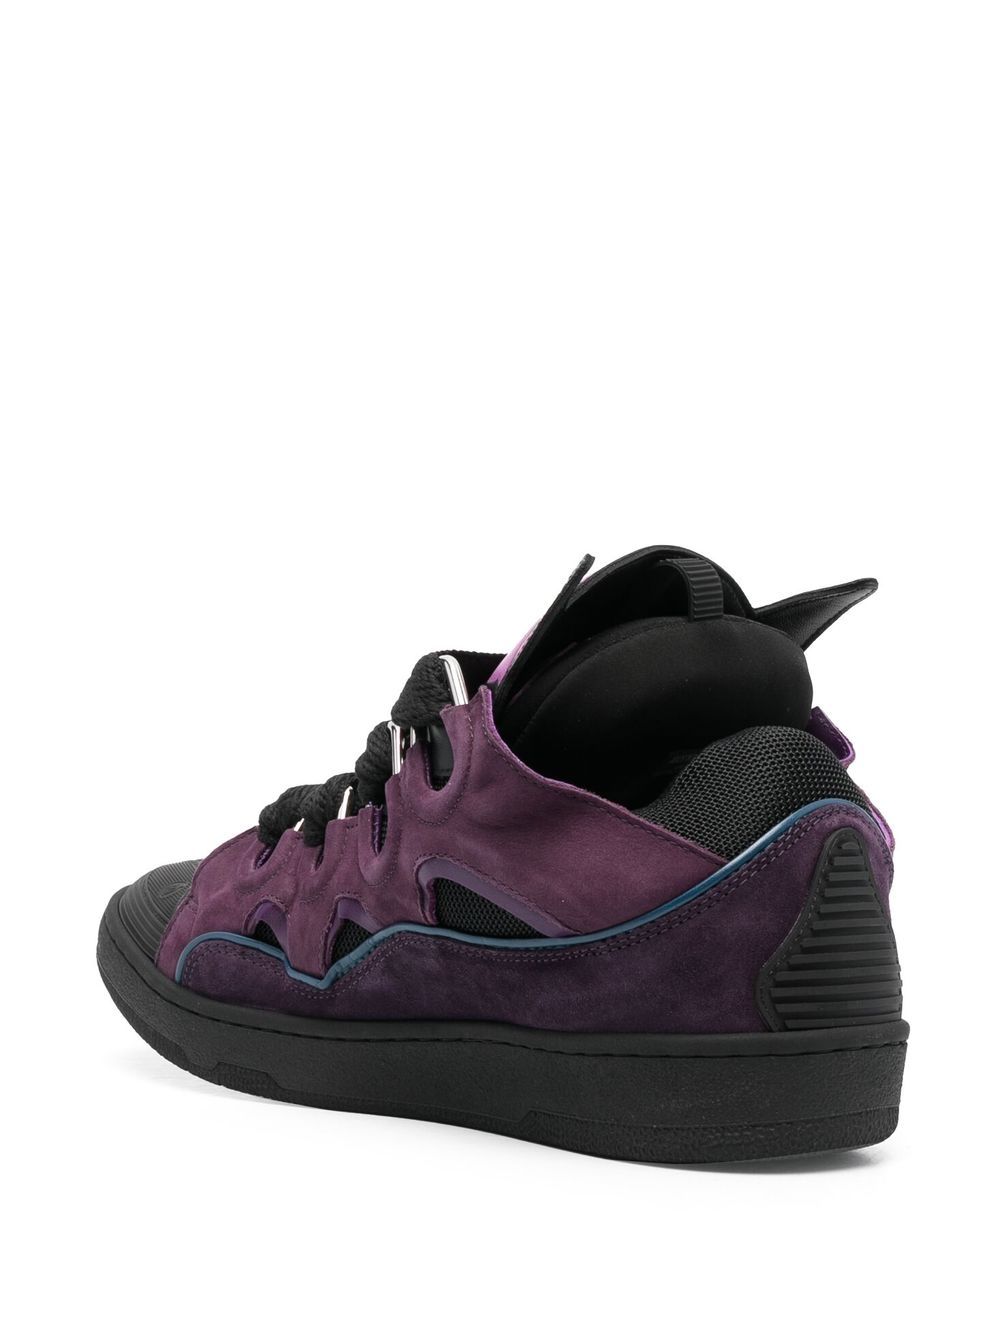 LANVIN Curb Sneakers BATMAN Raisin & Black, Limited Edition - MAISONDEFASHION.COM